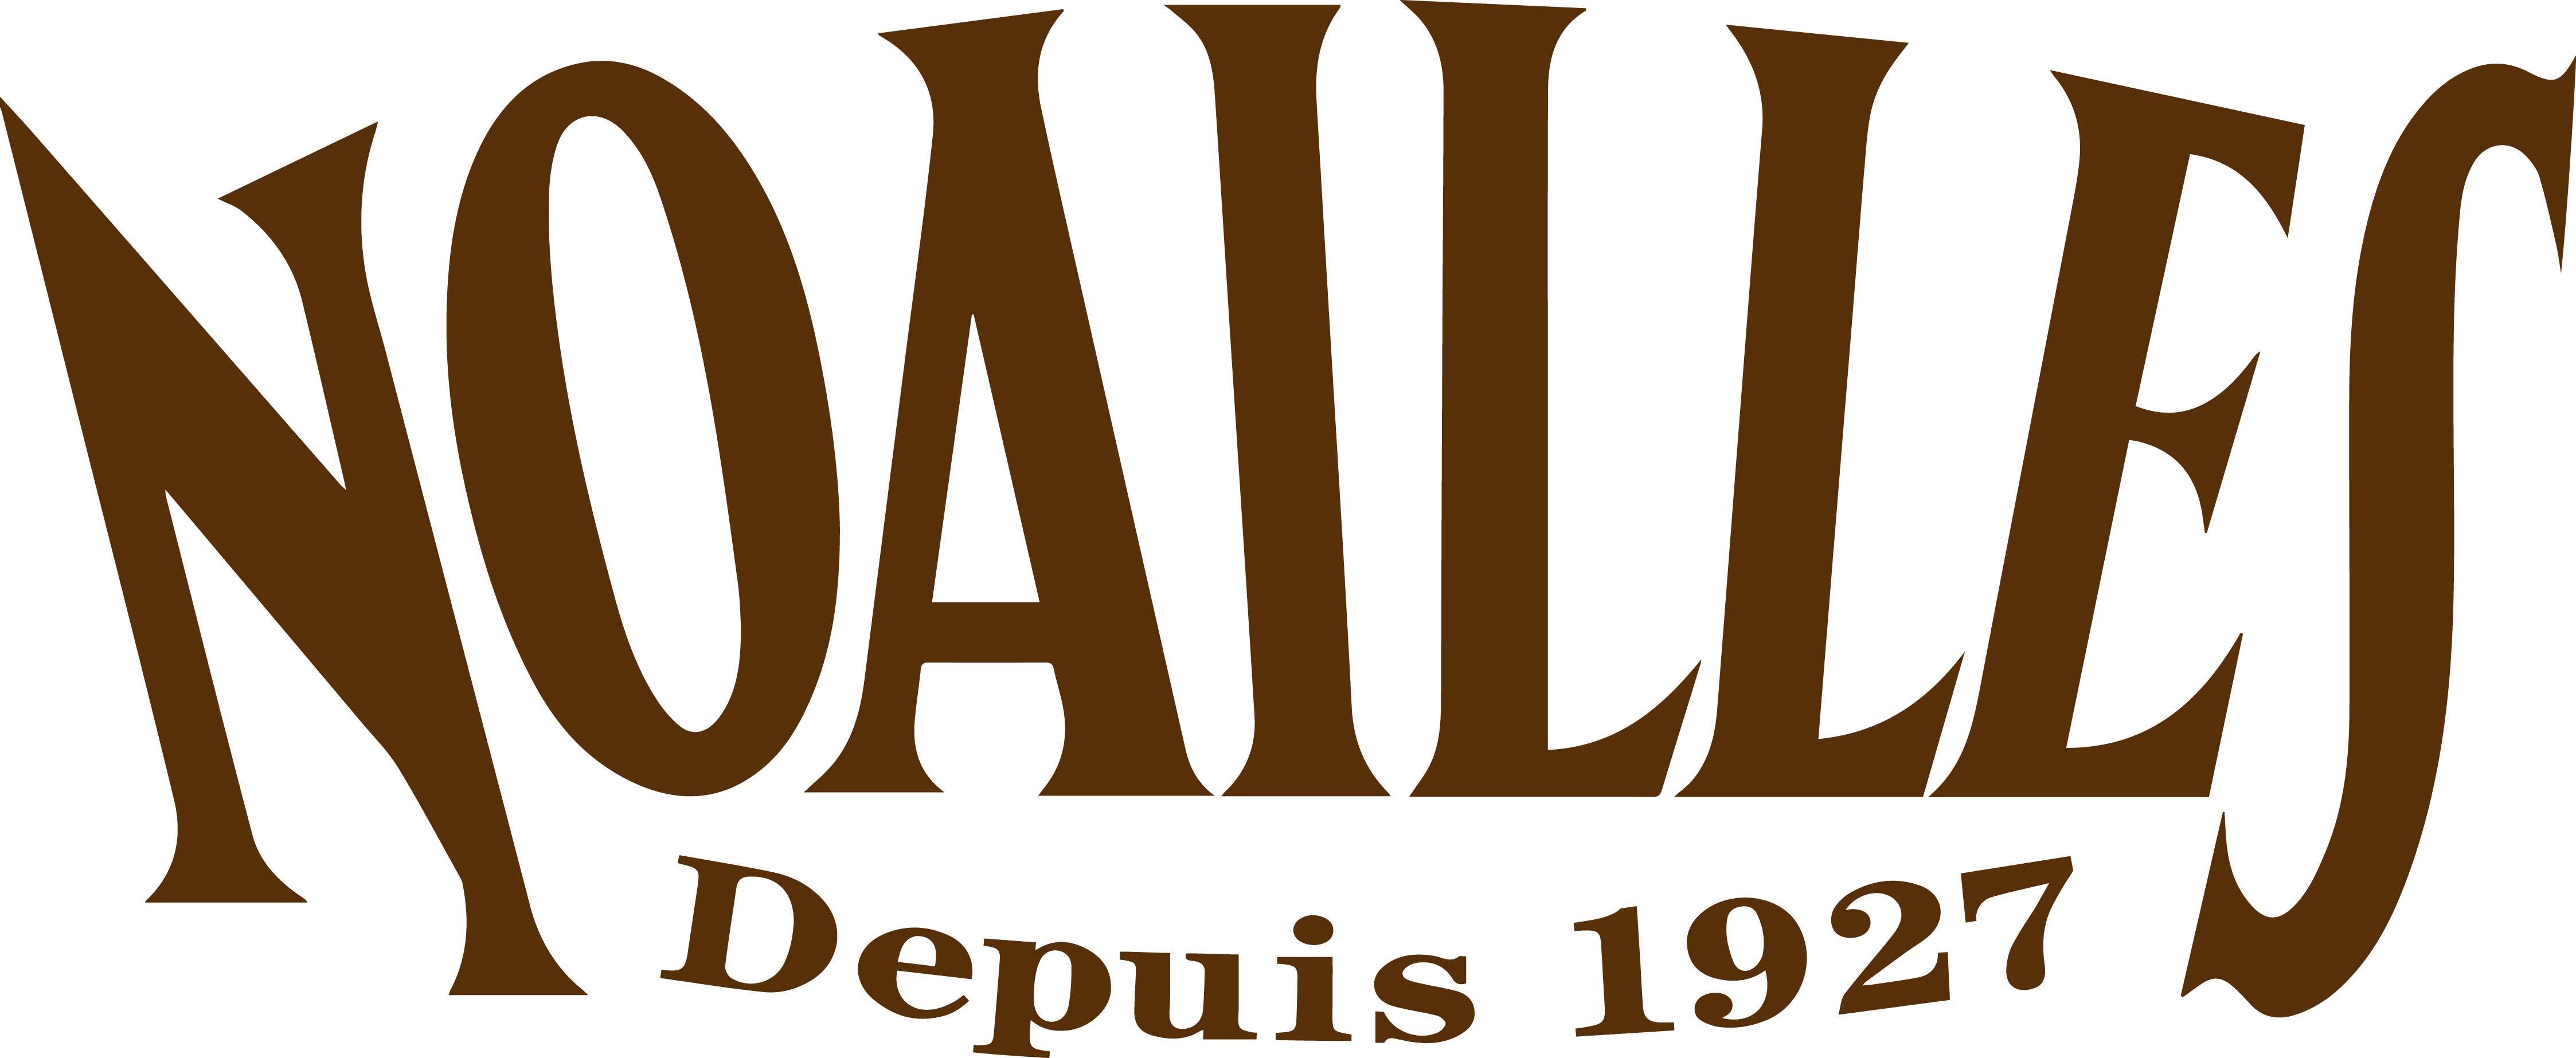 NOAILLES DEPUIS 1927